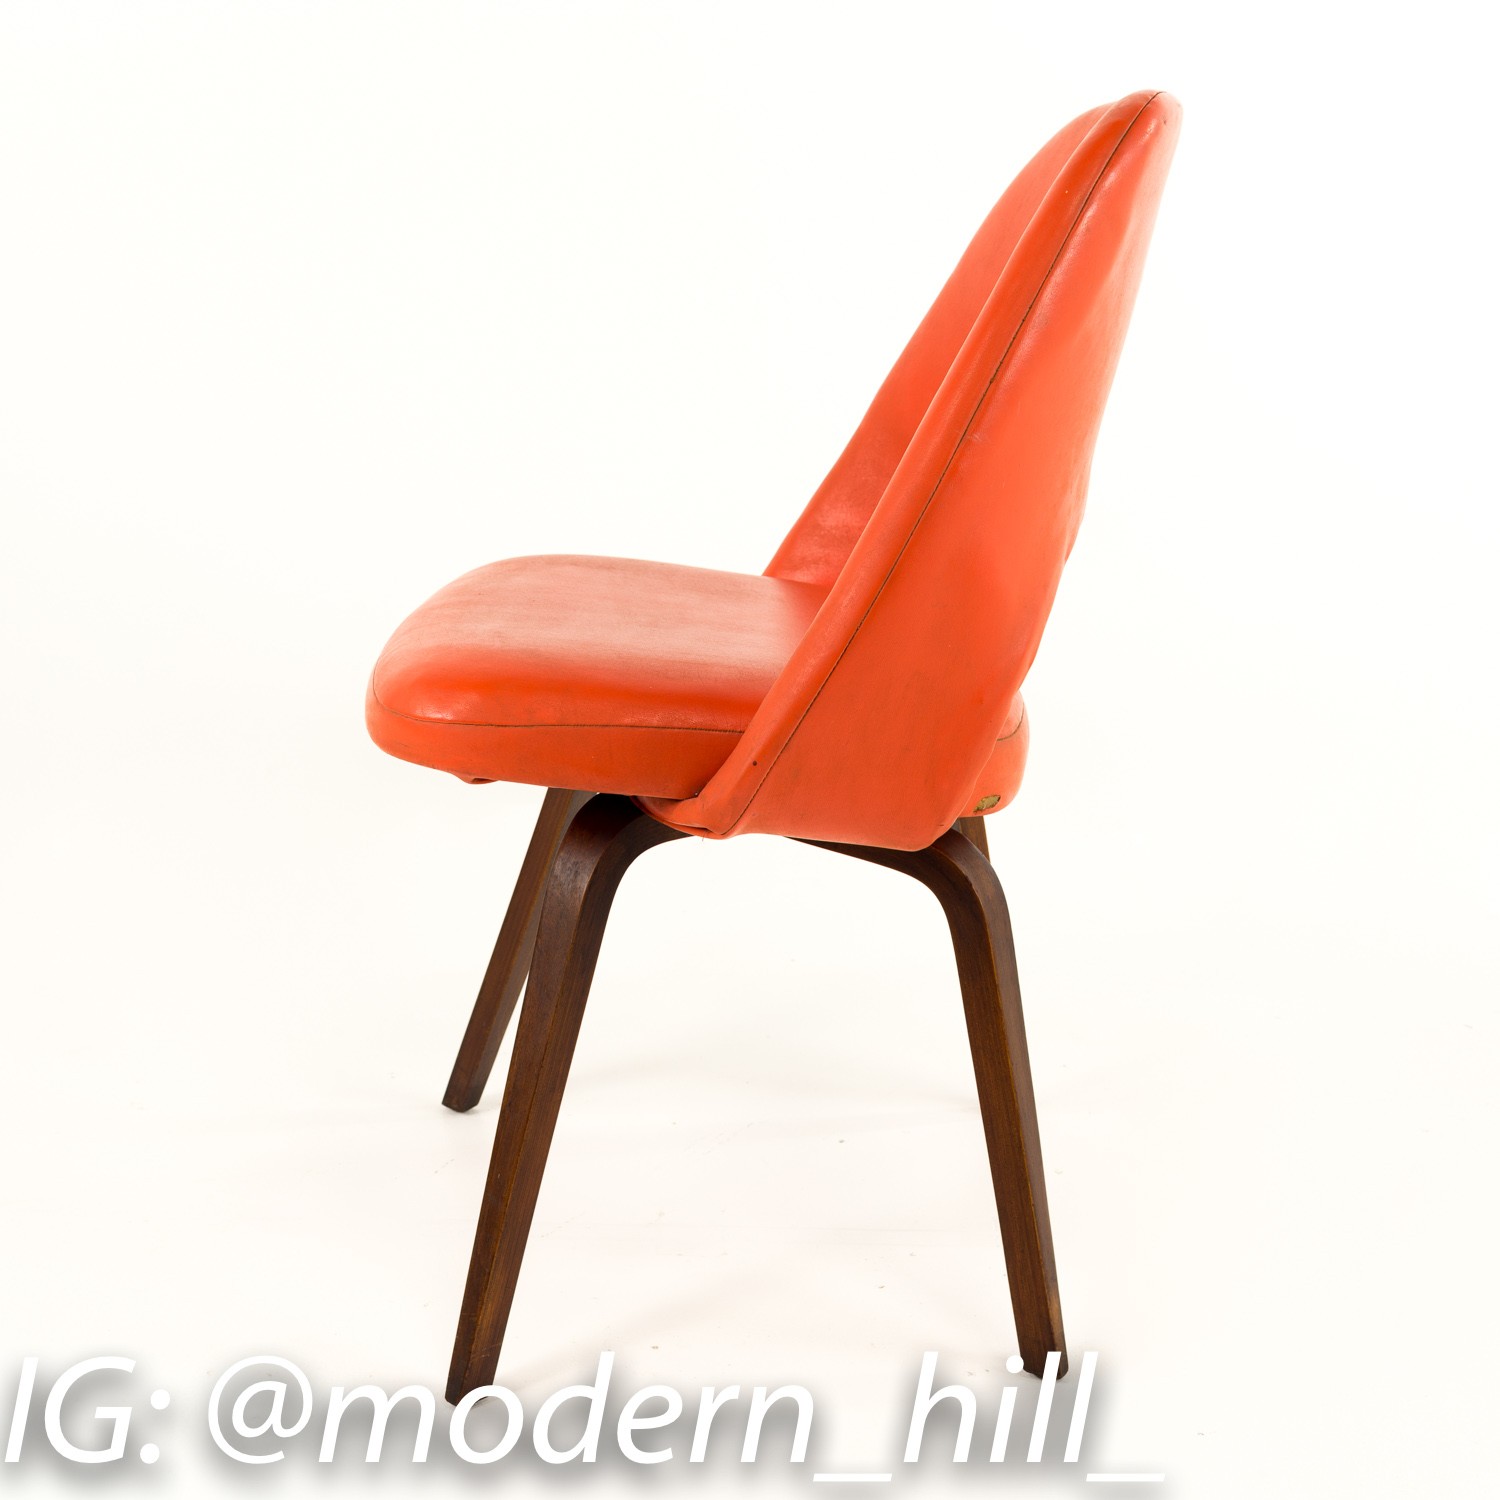 Saarinen Mid-century Modern Executive Chairs - Set of 4